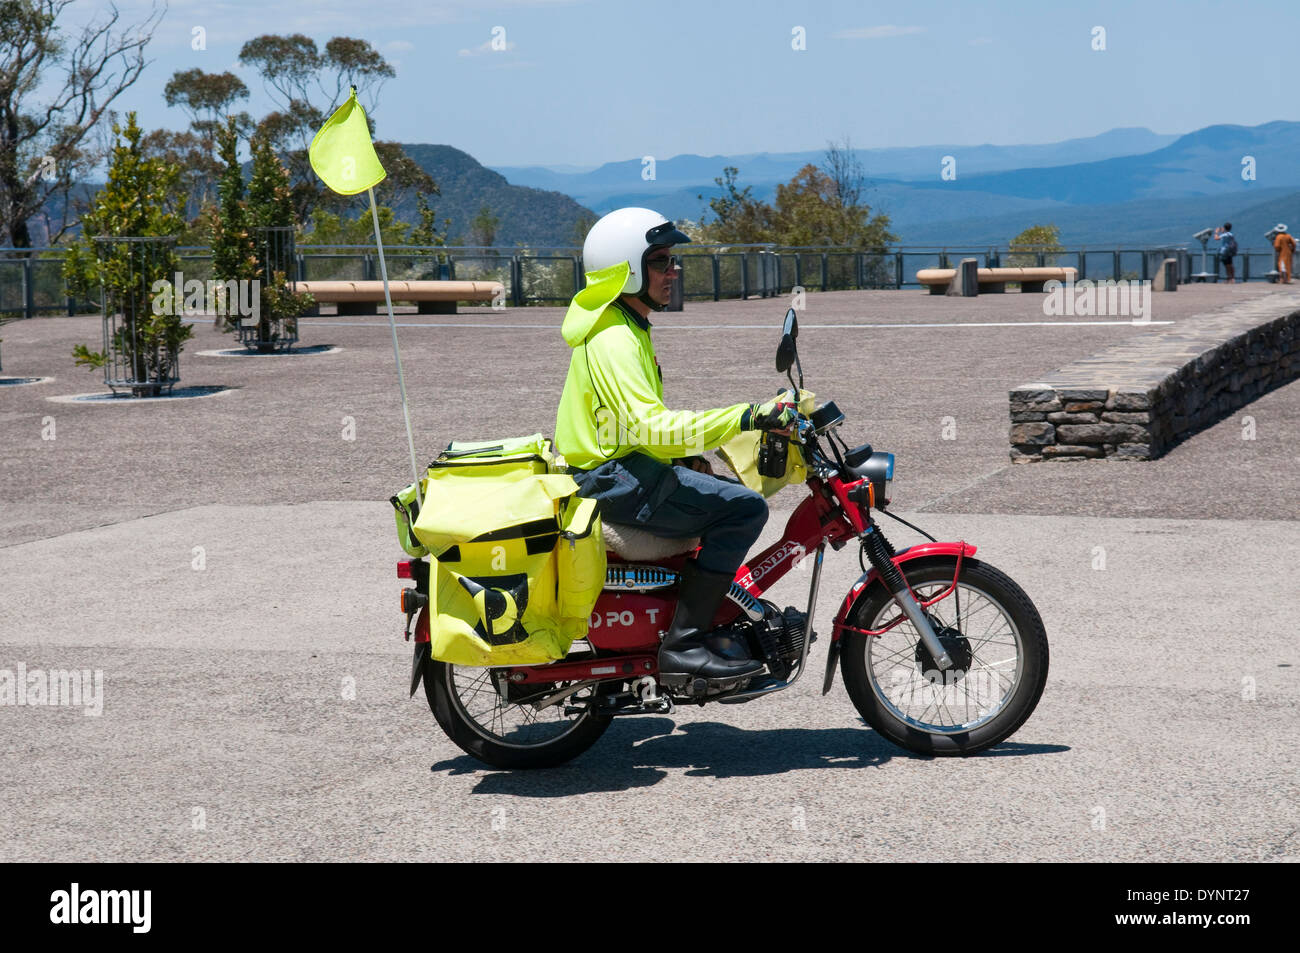 Motorbike Post Stockfotos und -bilder Kaufen - Alamy